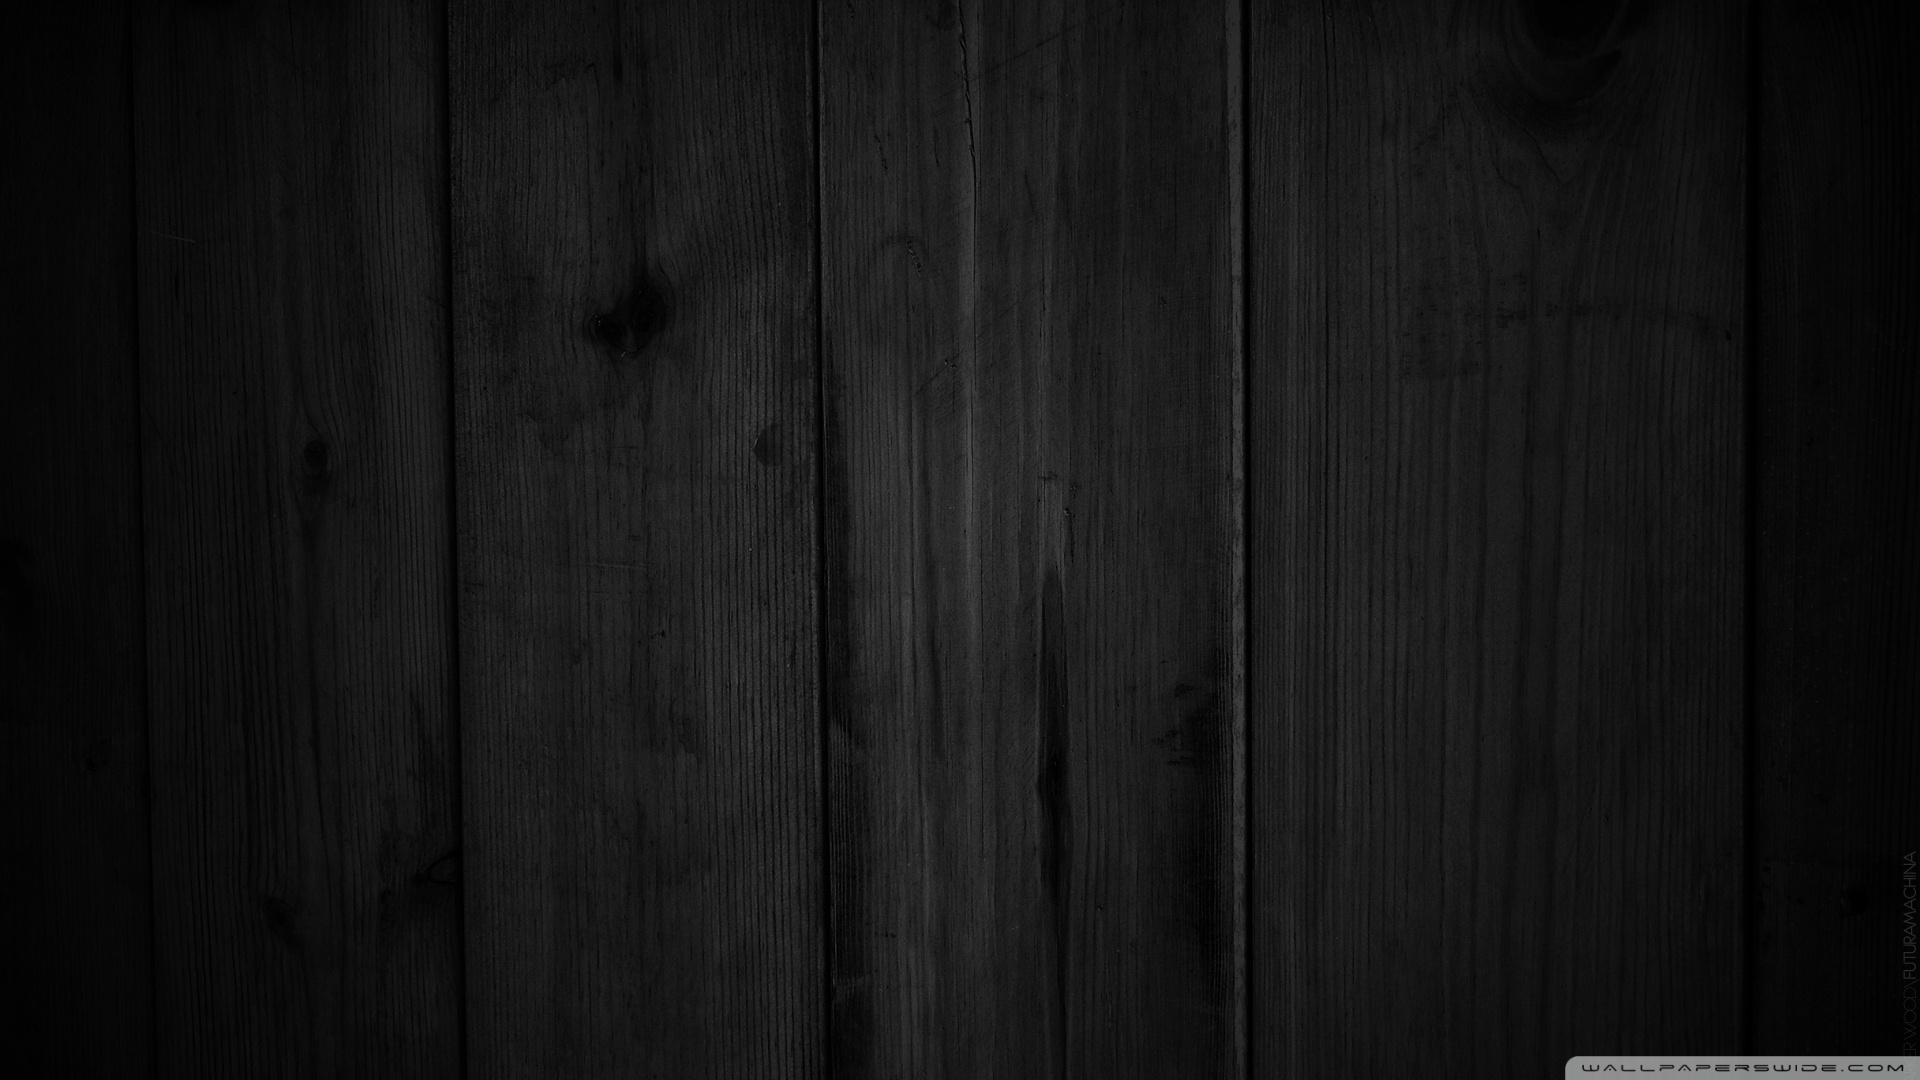 49+] Black Wood Wallpaper HD - WallpaperSafari